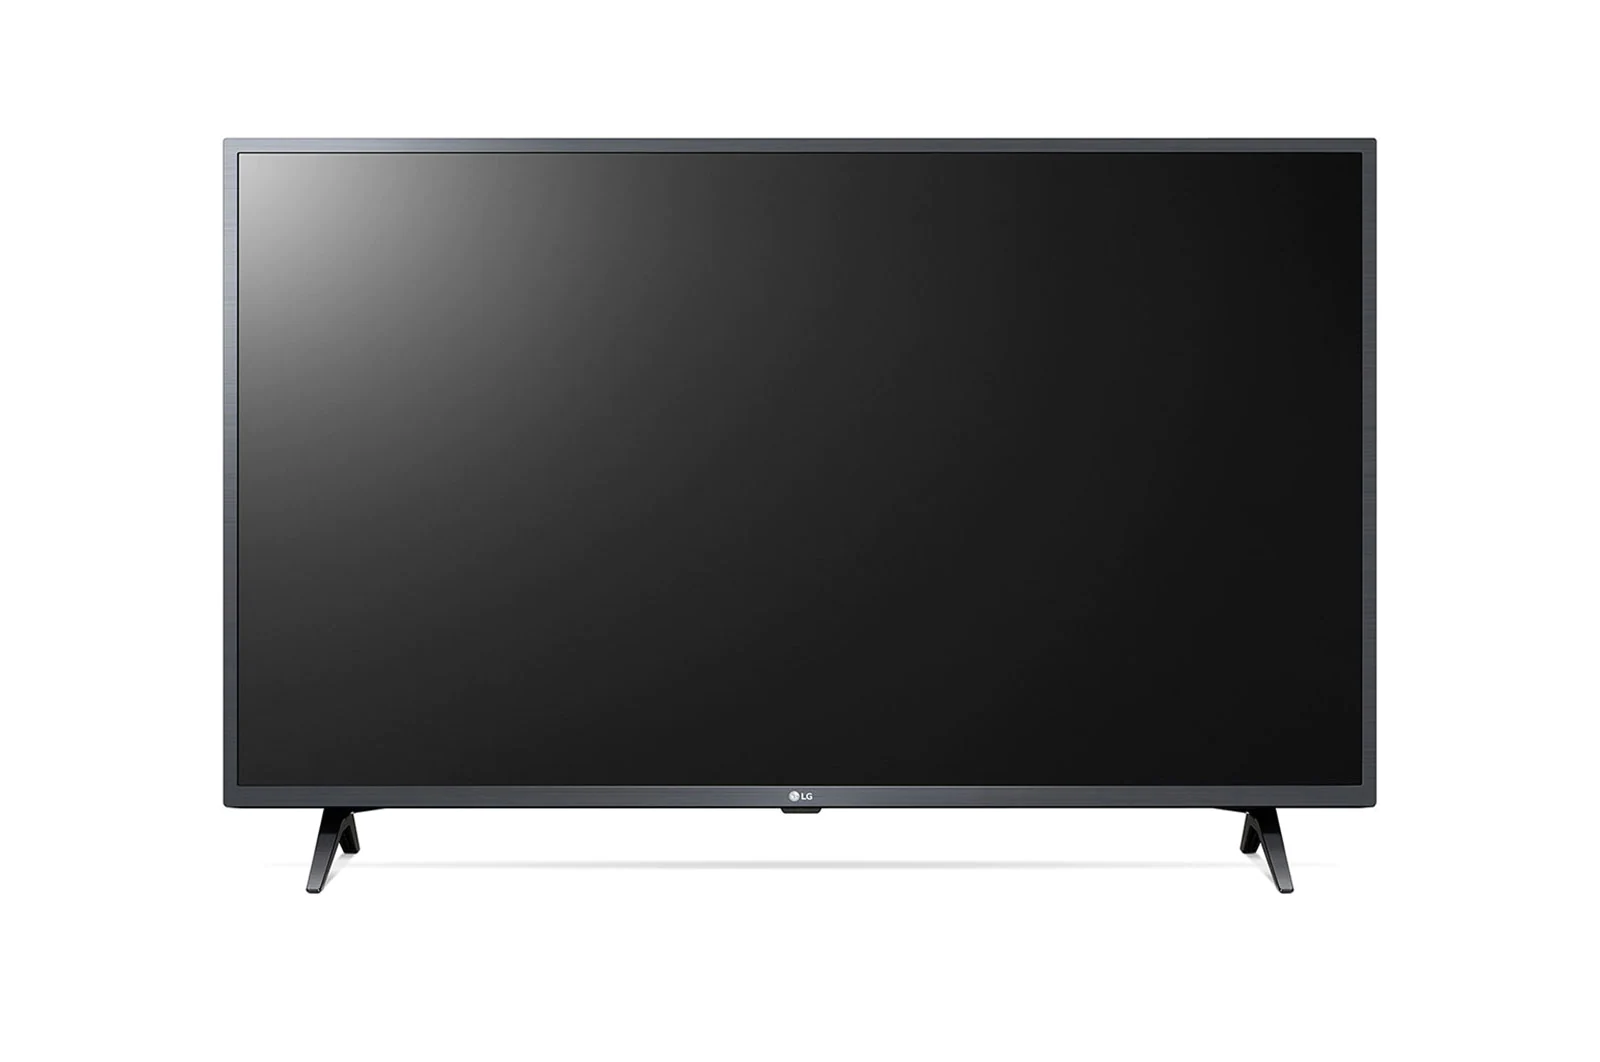 LG LED Smart TV 43 inch Full HD